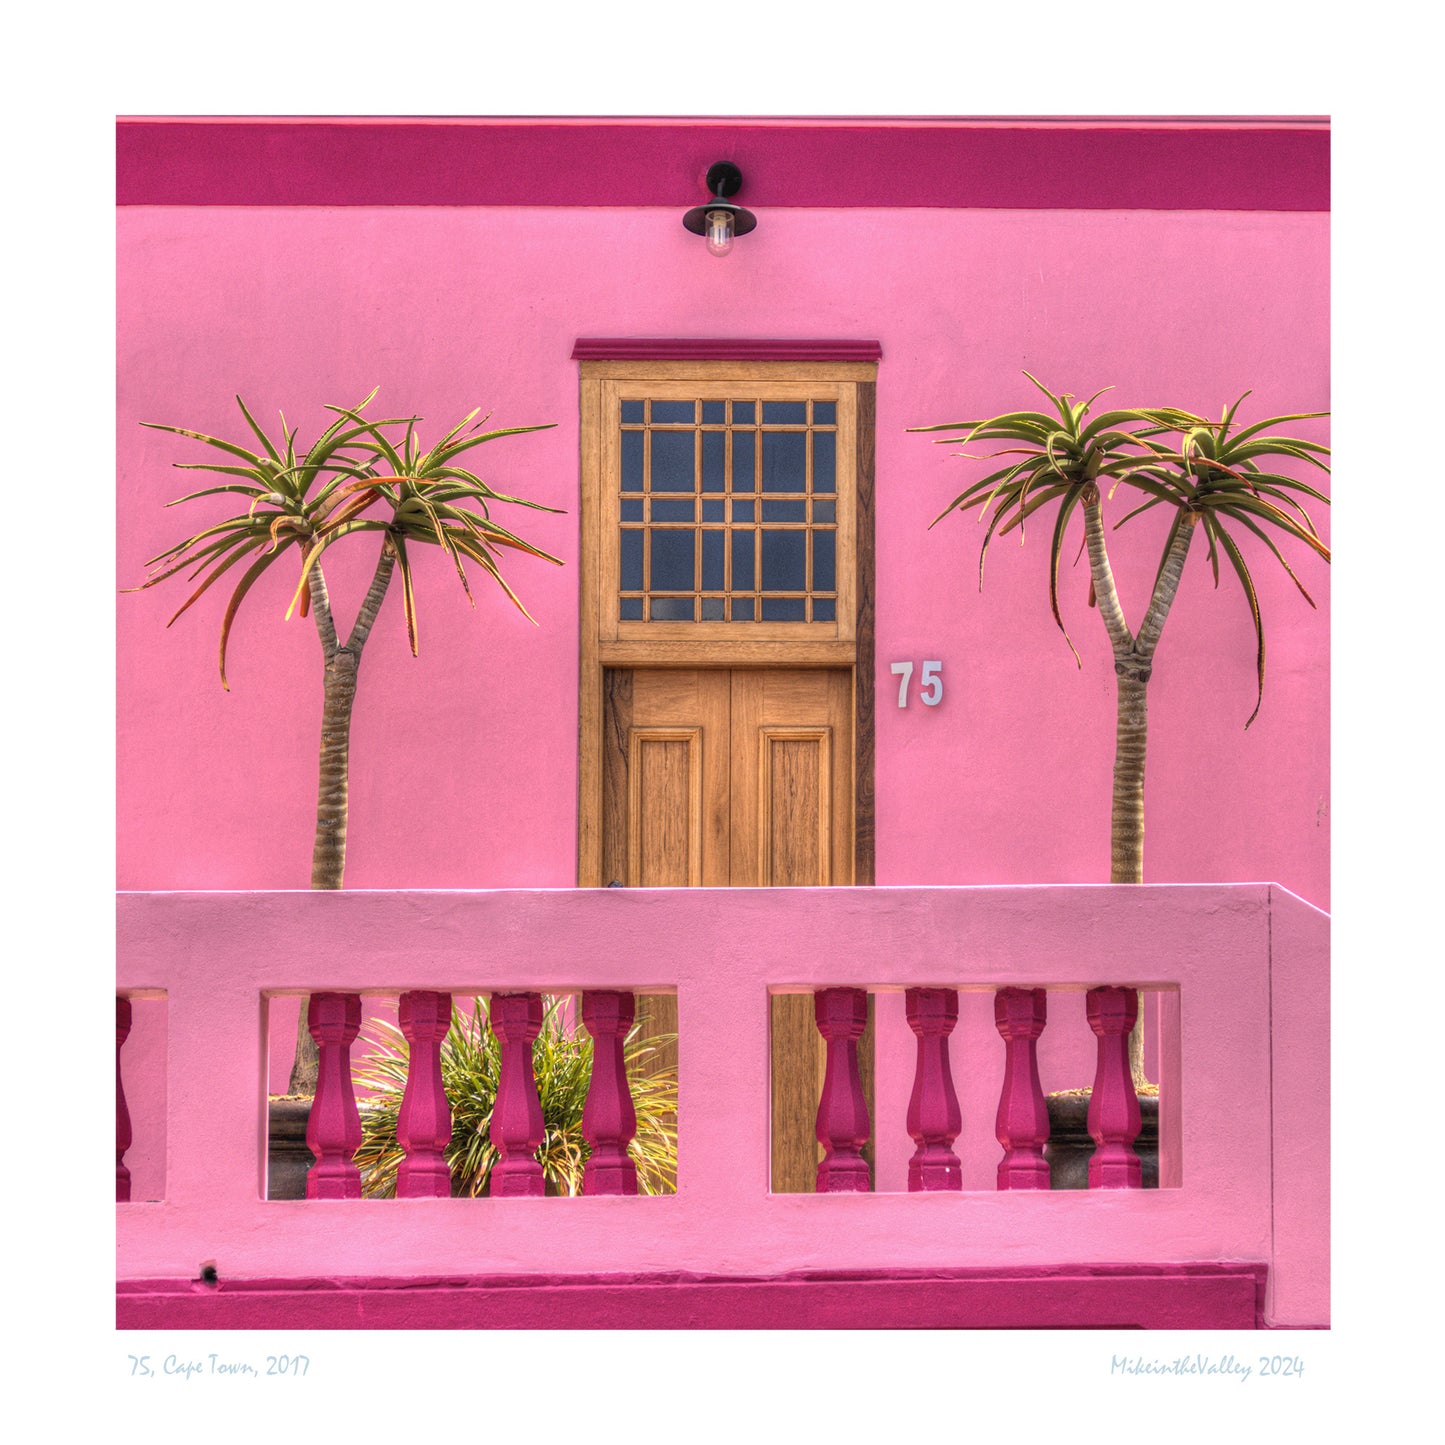 schöne Haustür aus Holz in einer pinkfarbenen Hauswand. Rechts und links davon jeweils eine Palme.